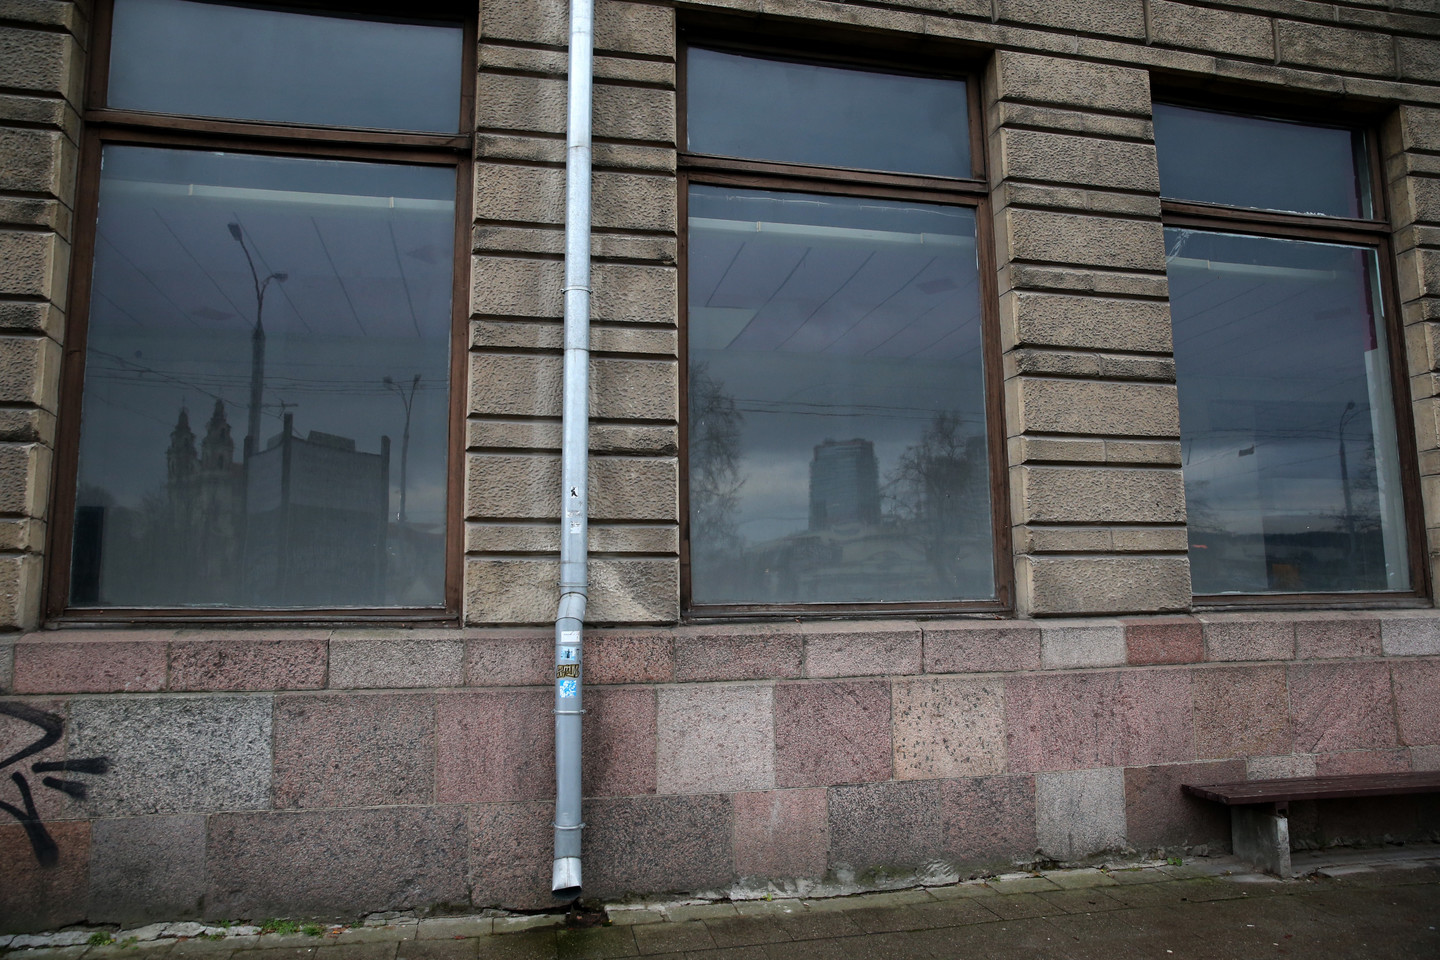 Vilniaus miesto savivaldybei nusprendęs grąžinti Goštauto gatvėje esančias studijos patalpas jas pirmadienį pridavė savivaldybės darbuotojams.<br> R.Danisevičiaus nuotr.